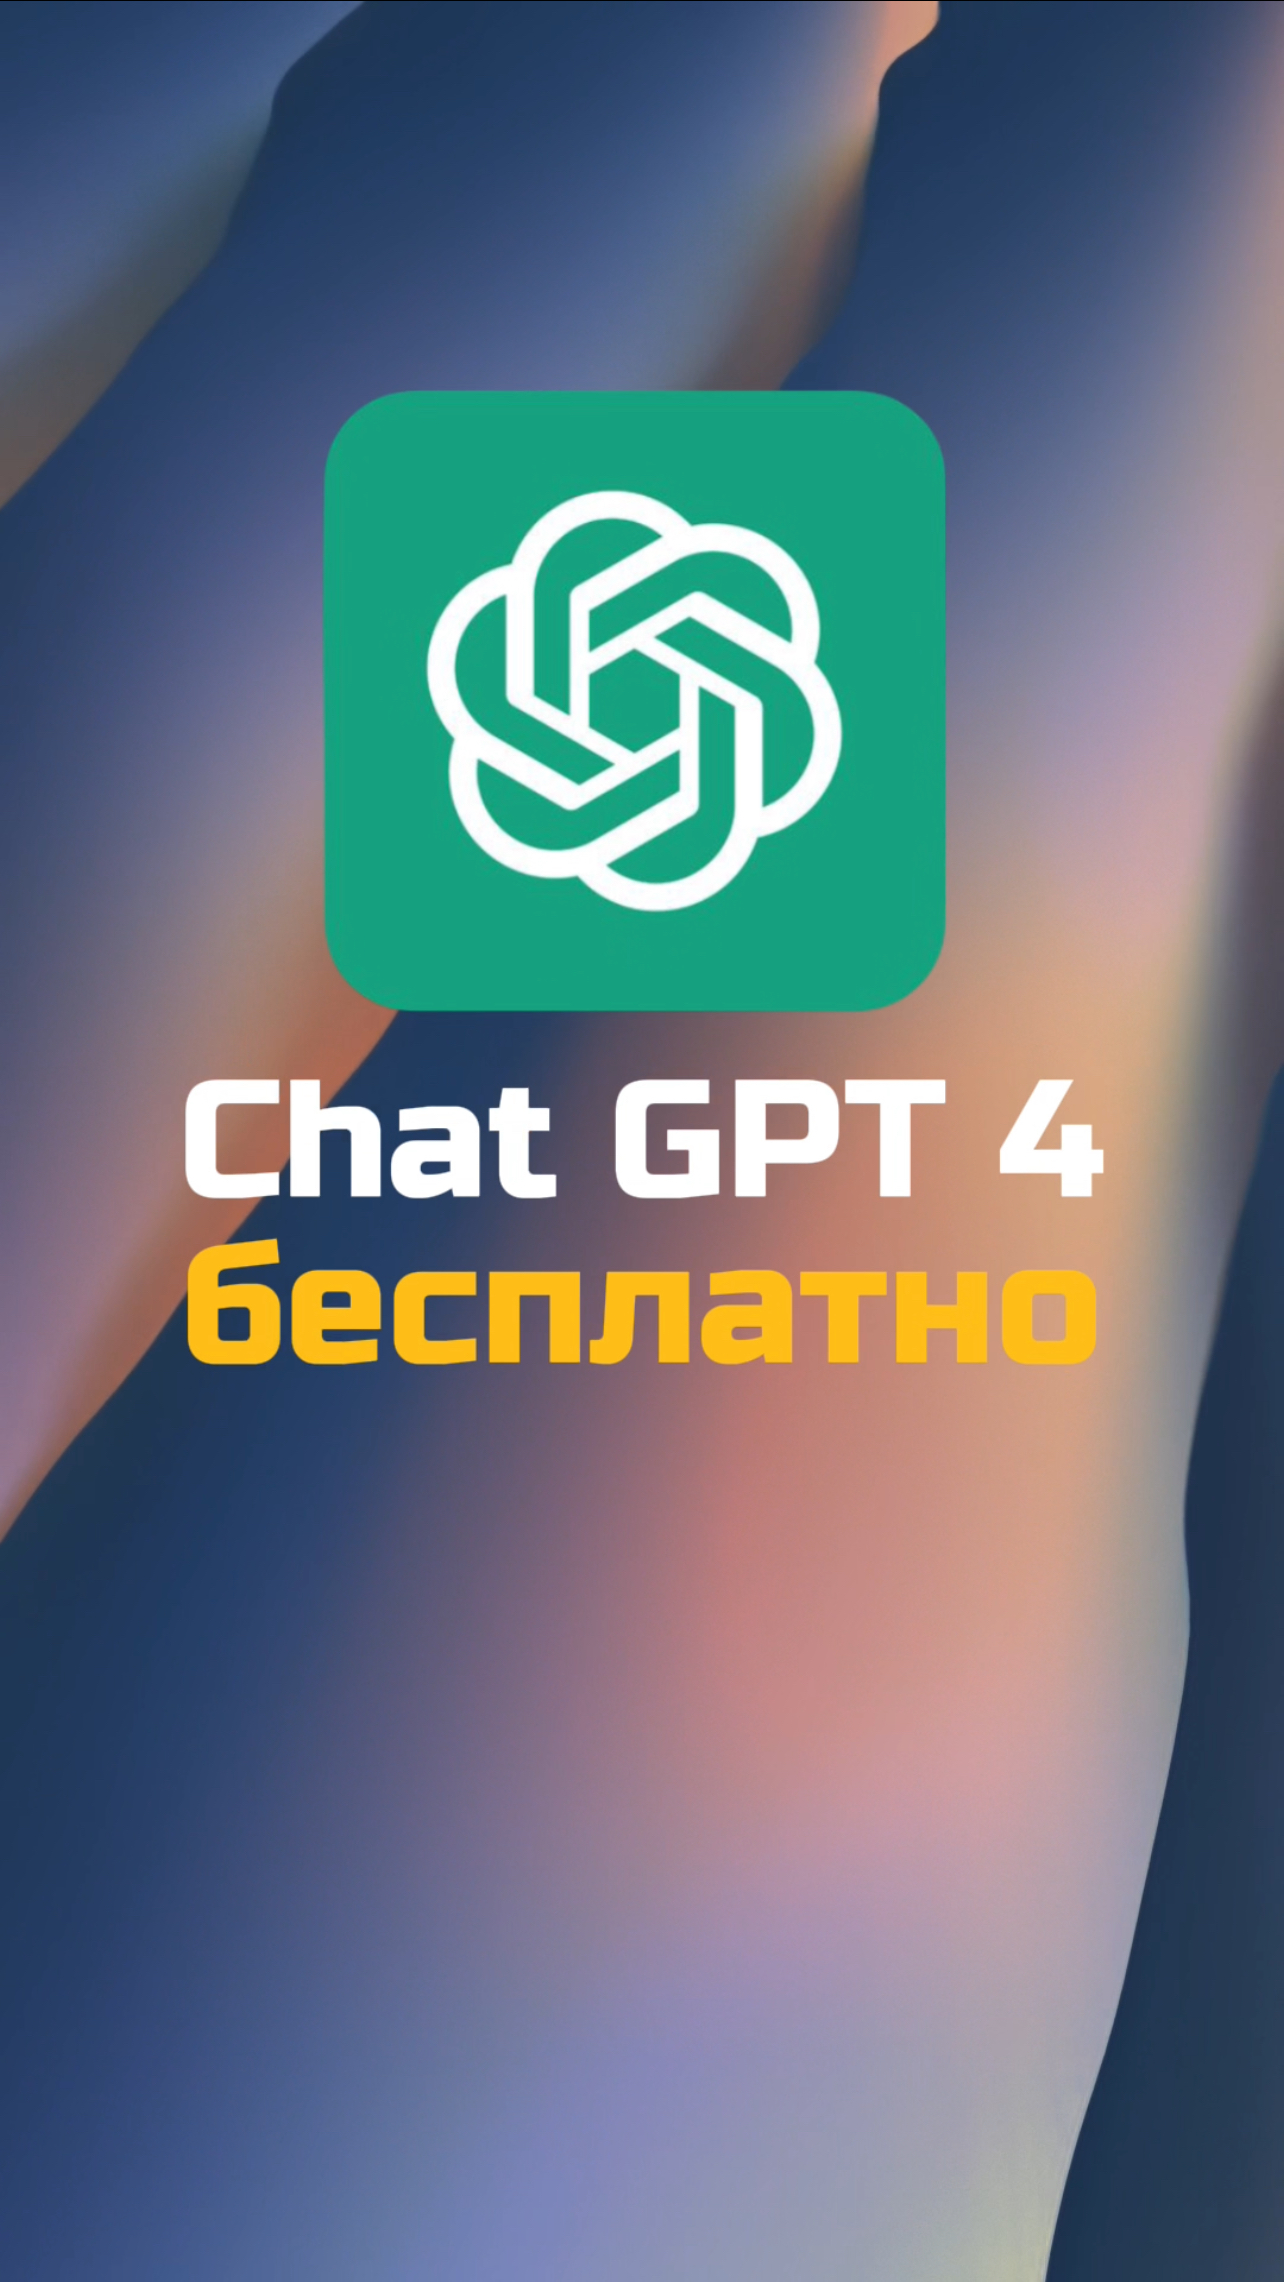 ChatGPT бесплатно!
Больше интересного в профиле, переходи.